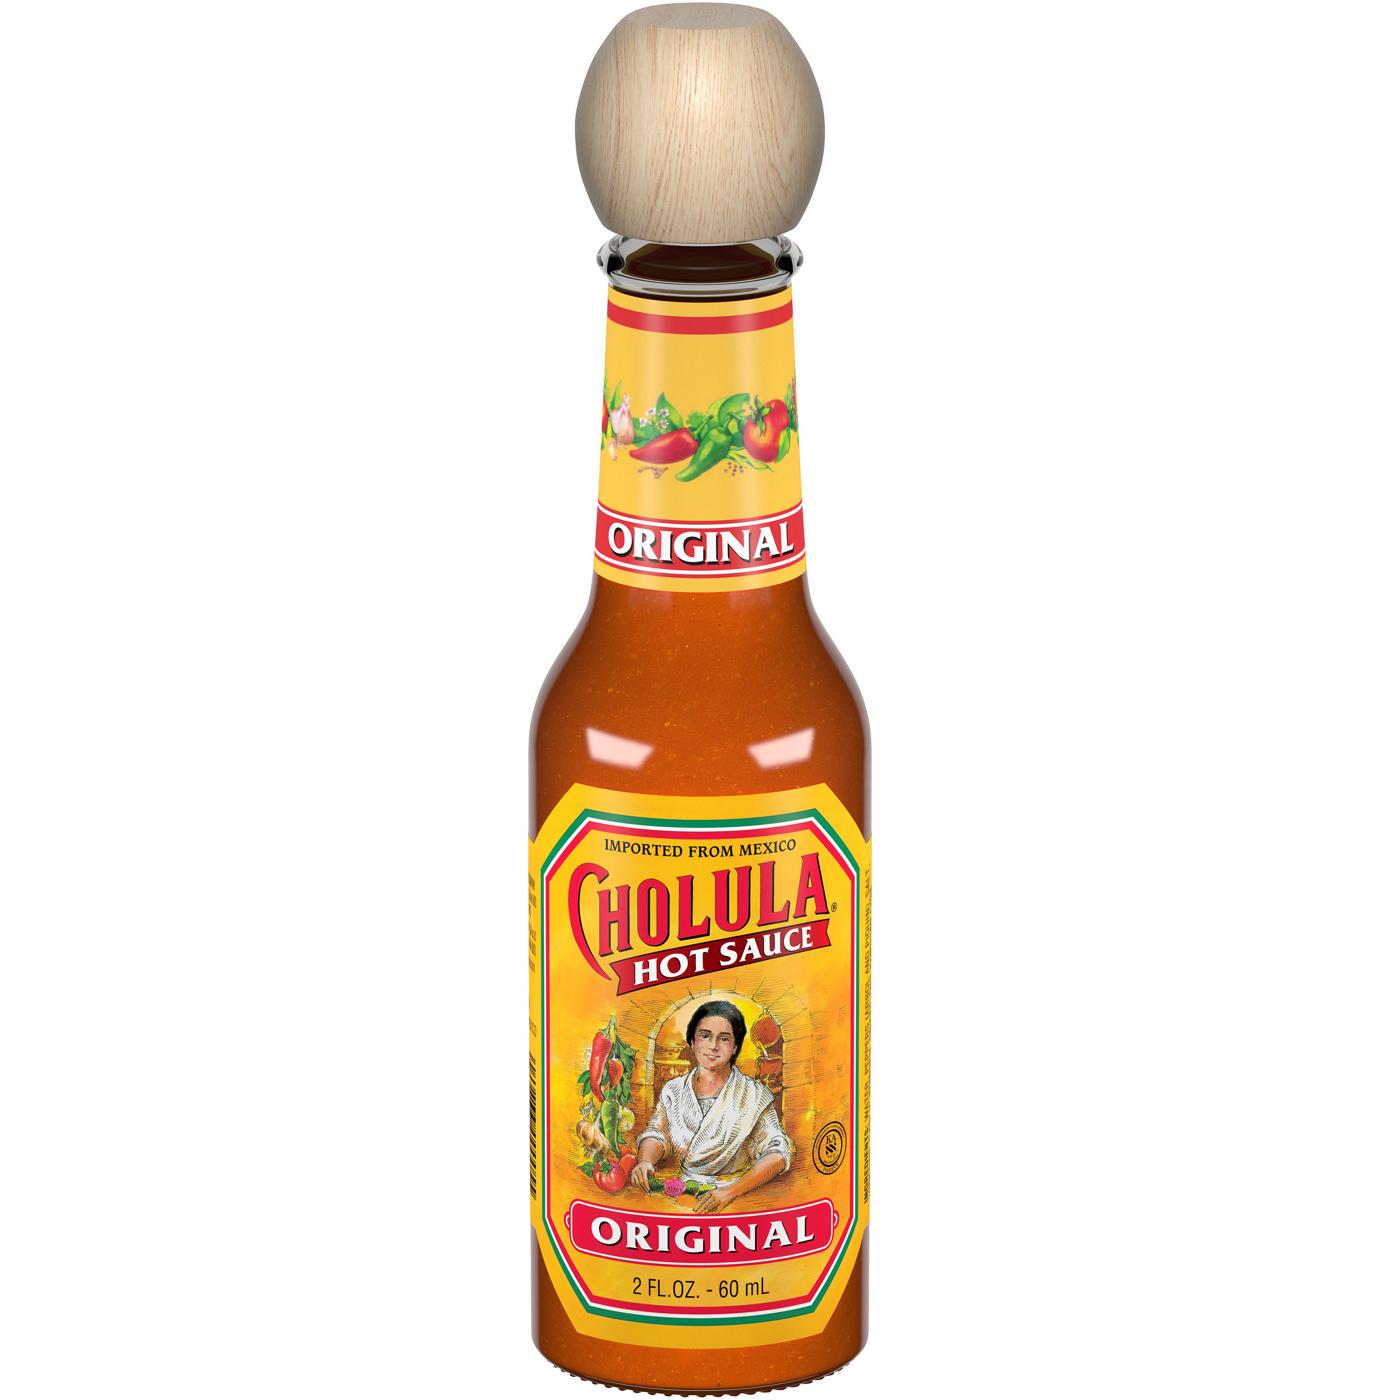 Cholula Original Hot Sauce; image 1 of 8